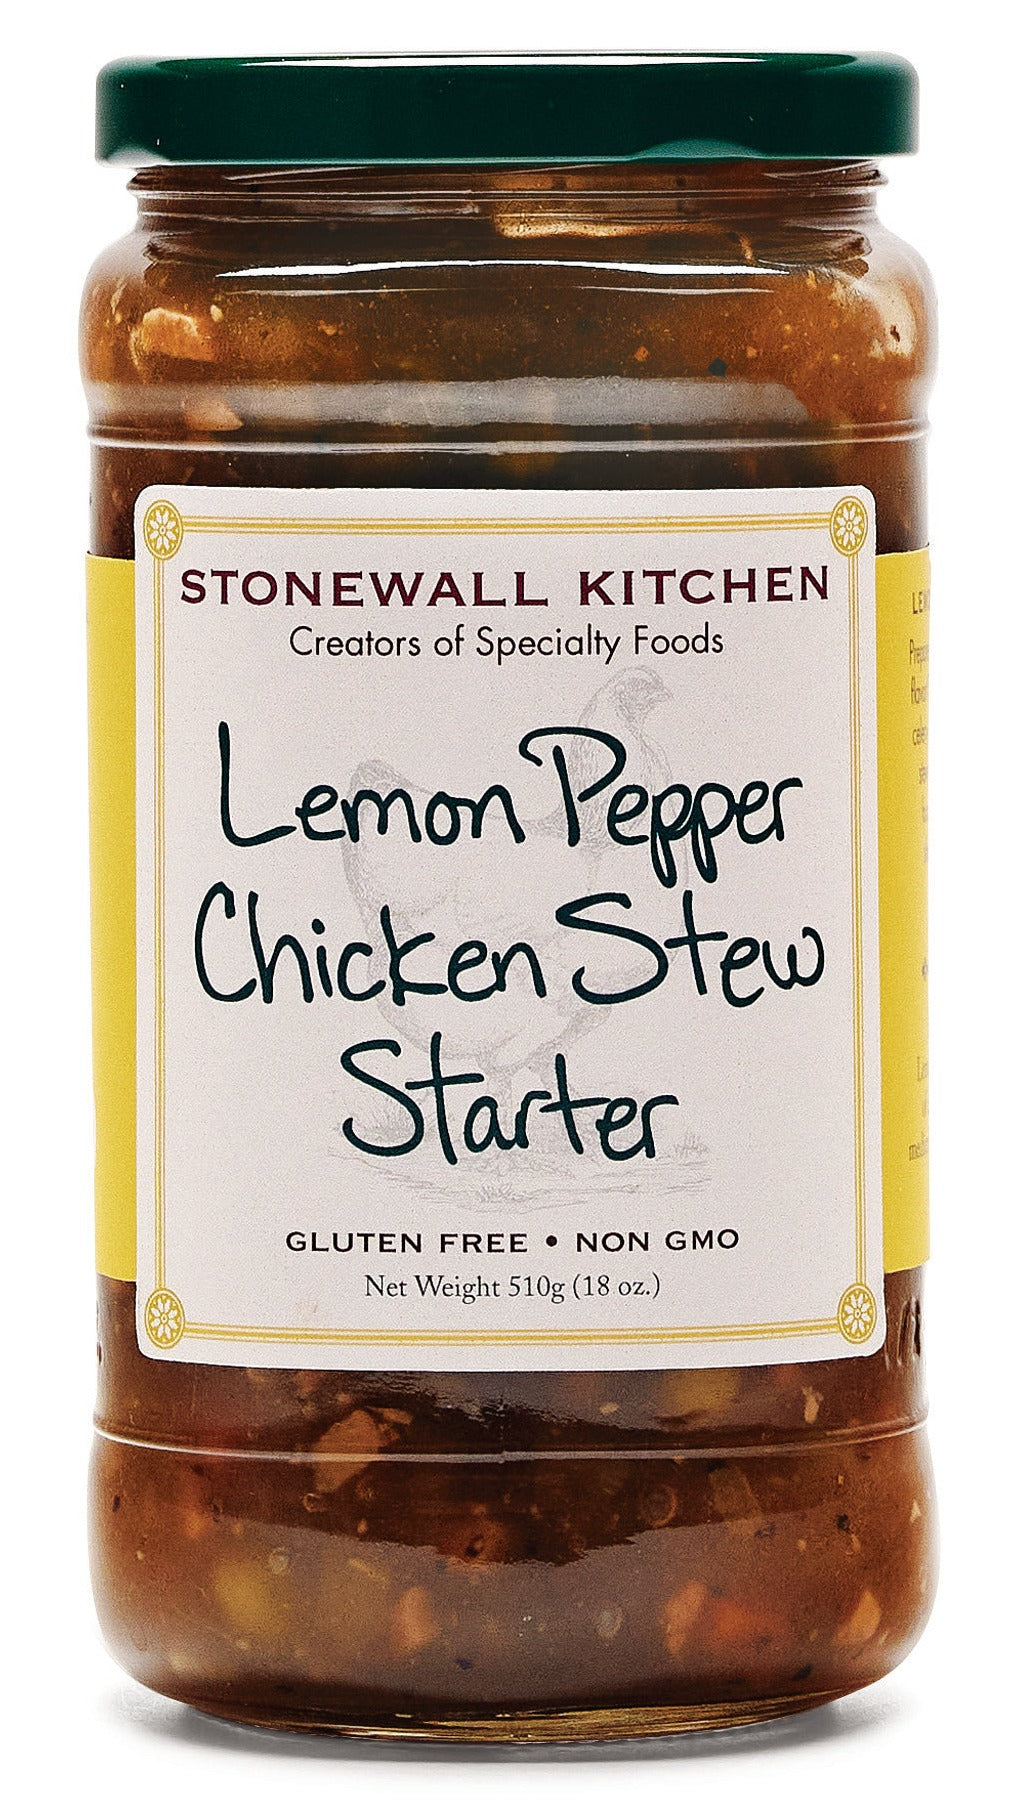 Stonewall Kitchen Lemon Pepper Chicken Stew Starter 